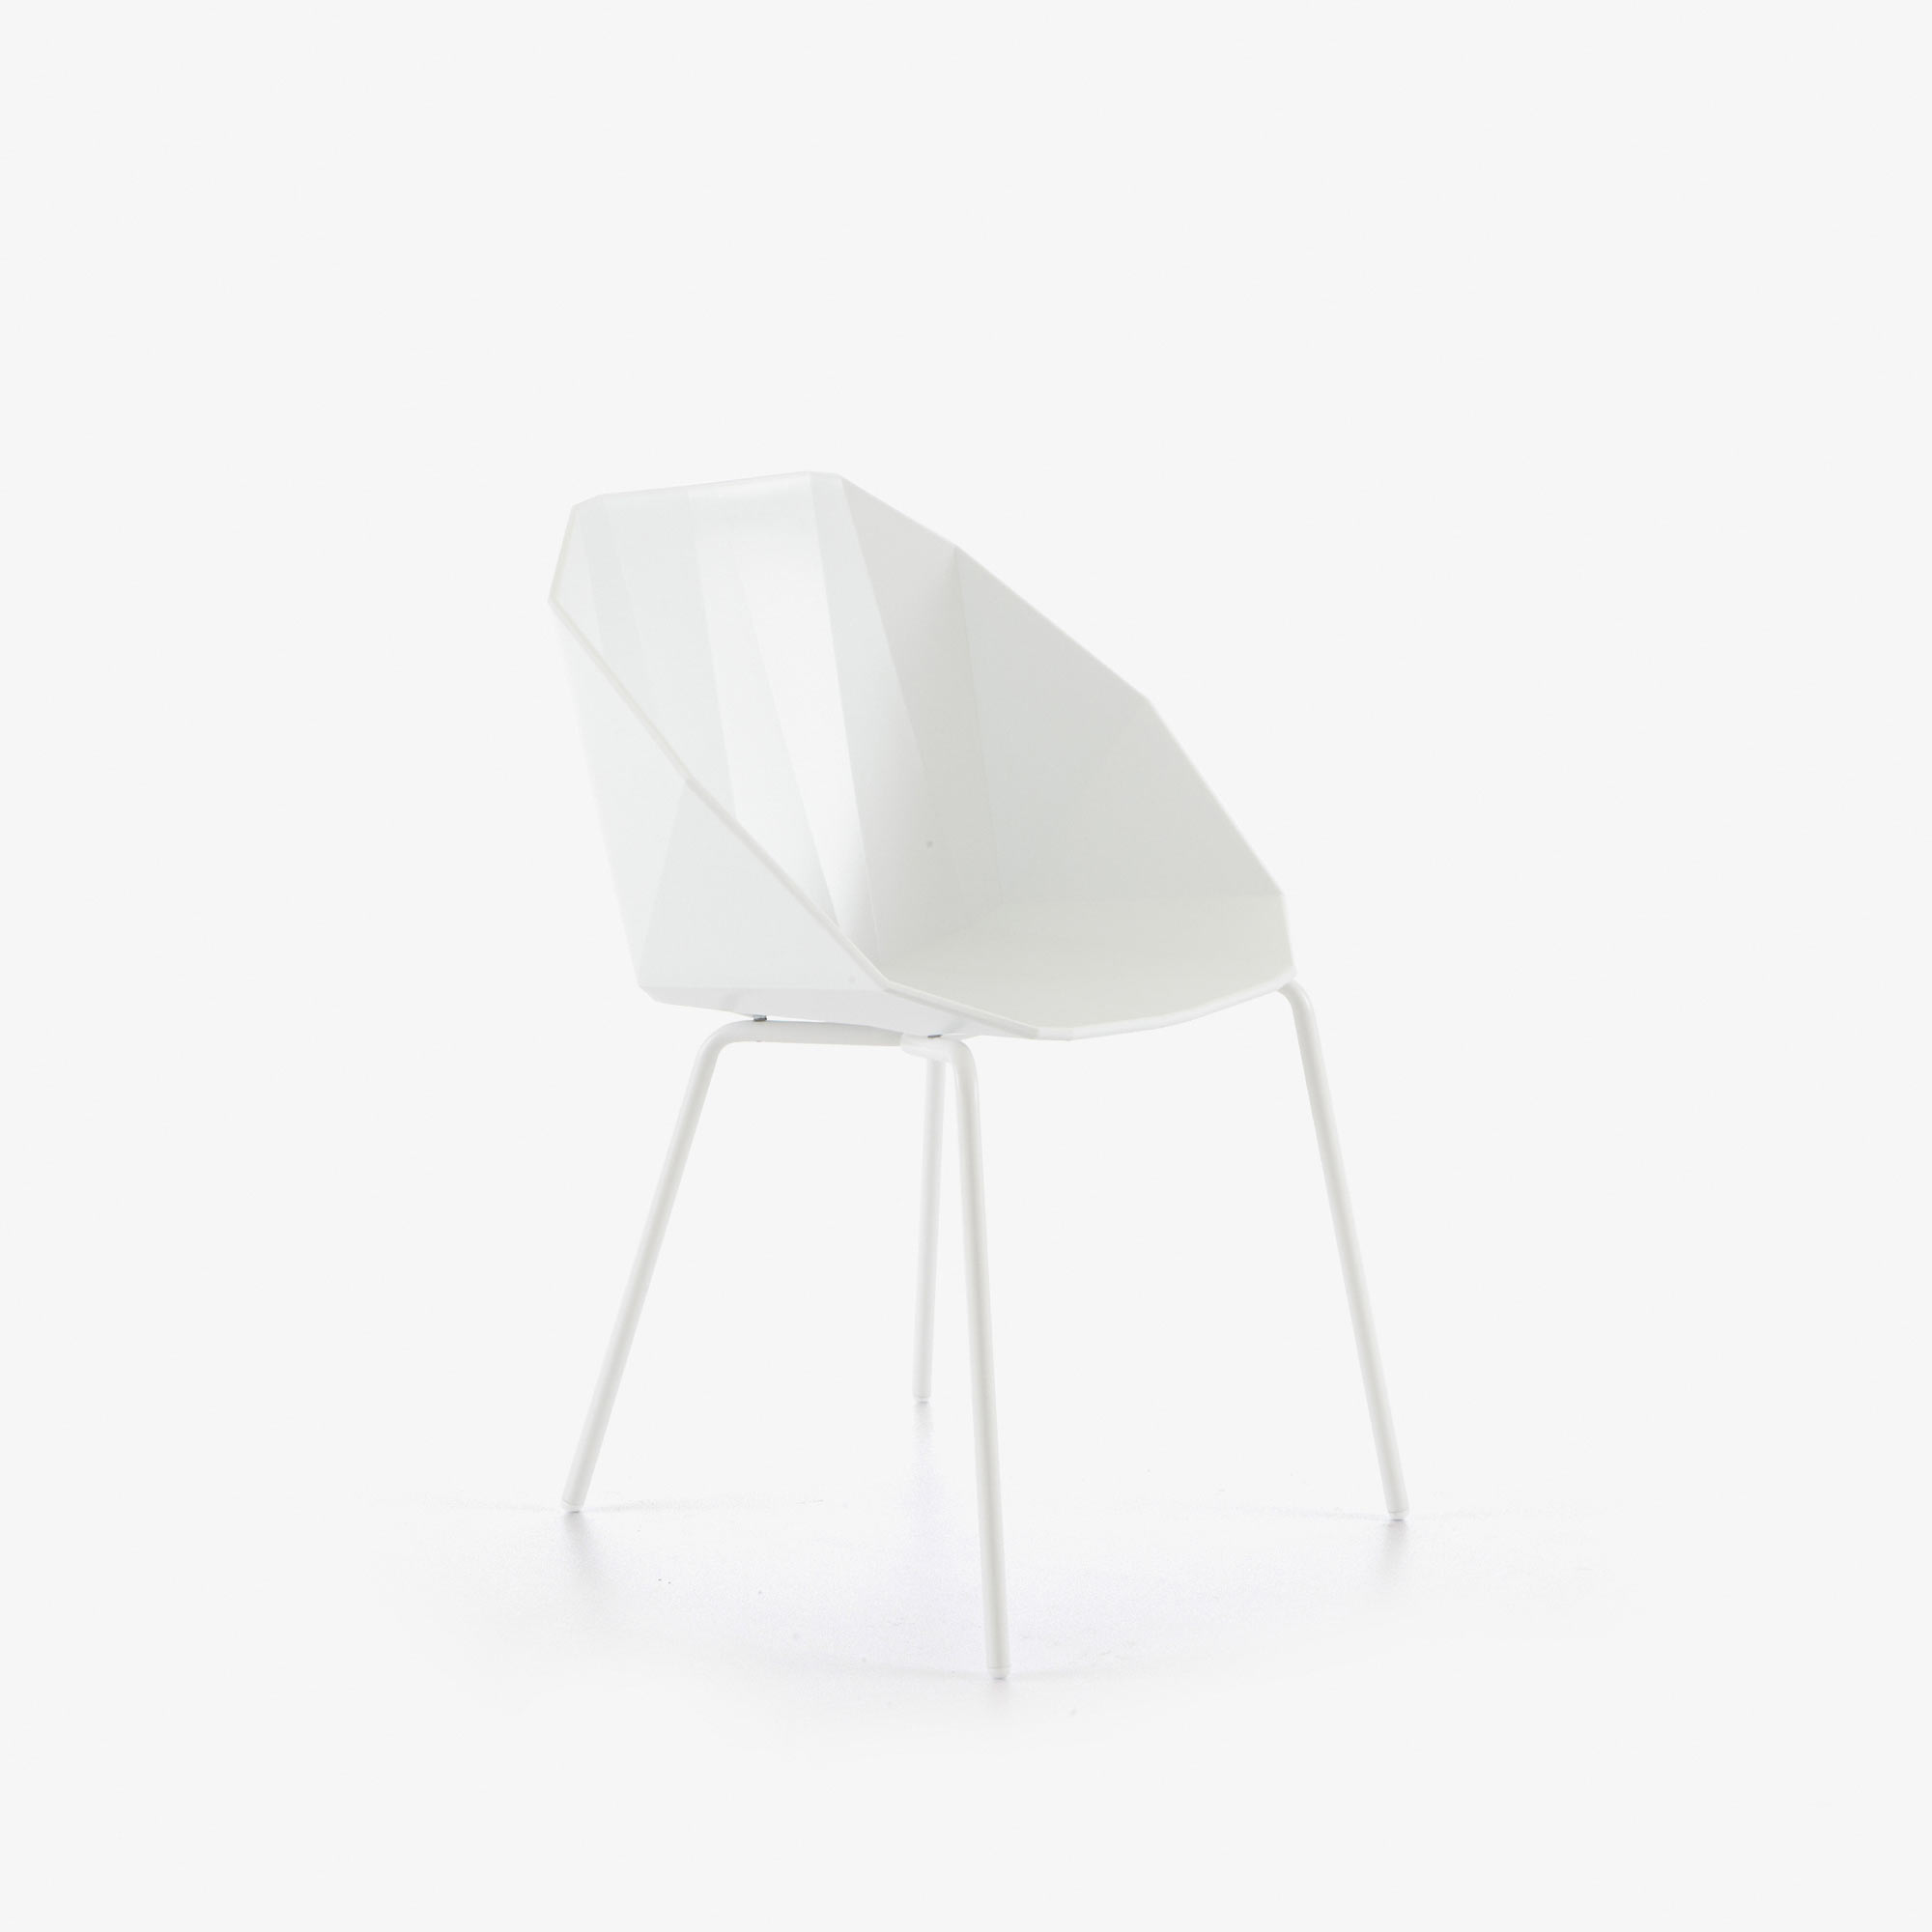 Image 椅子/桥形结构 白色 白色水性漆底座 2